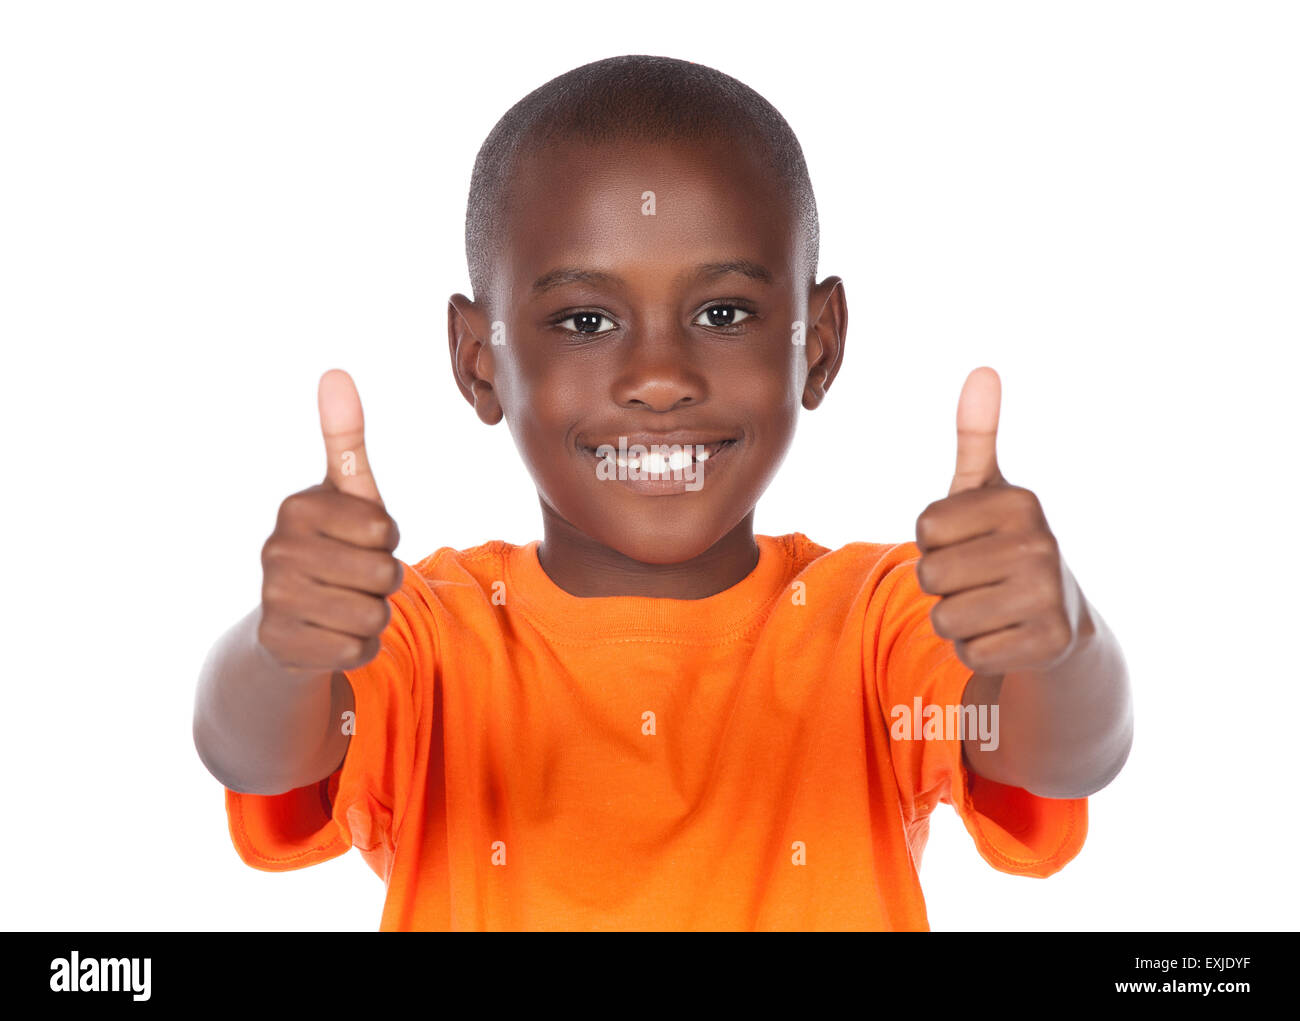 Cute african boy portant un tee-shirt orange. Le garçon est montrant un coup de pouce à l'appareil photo. Banque D'Images